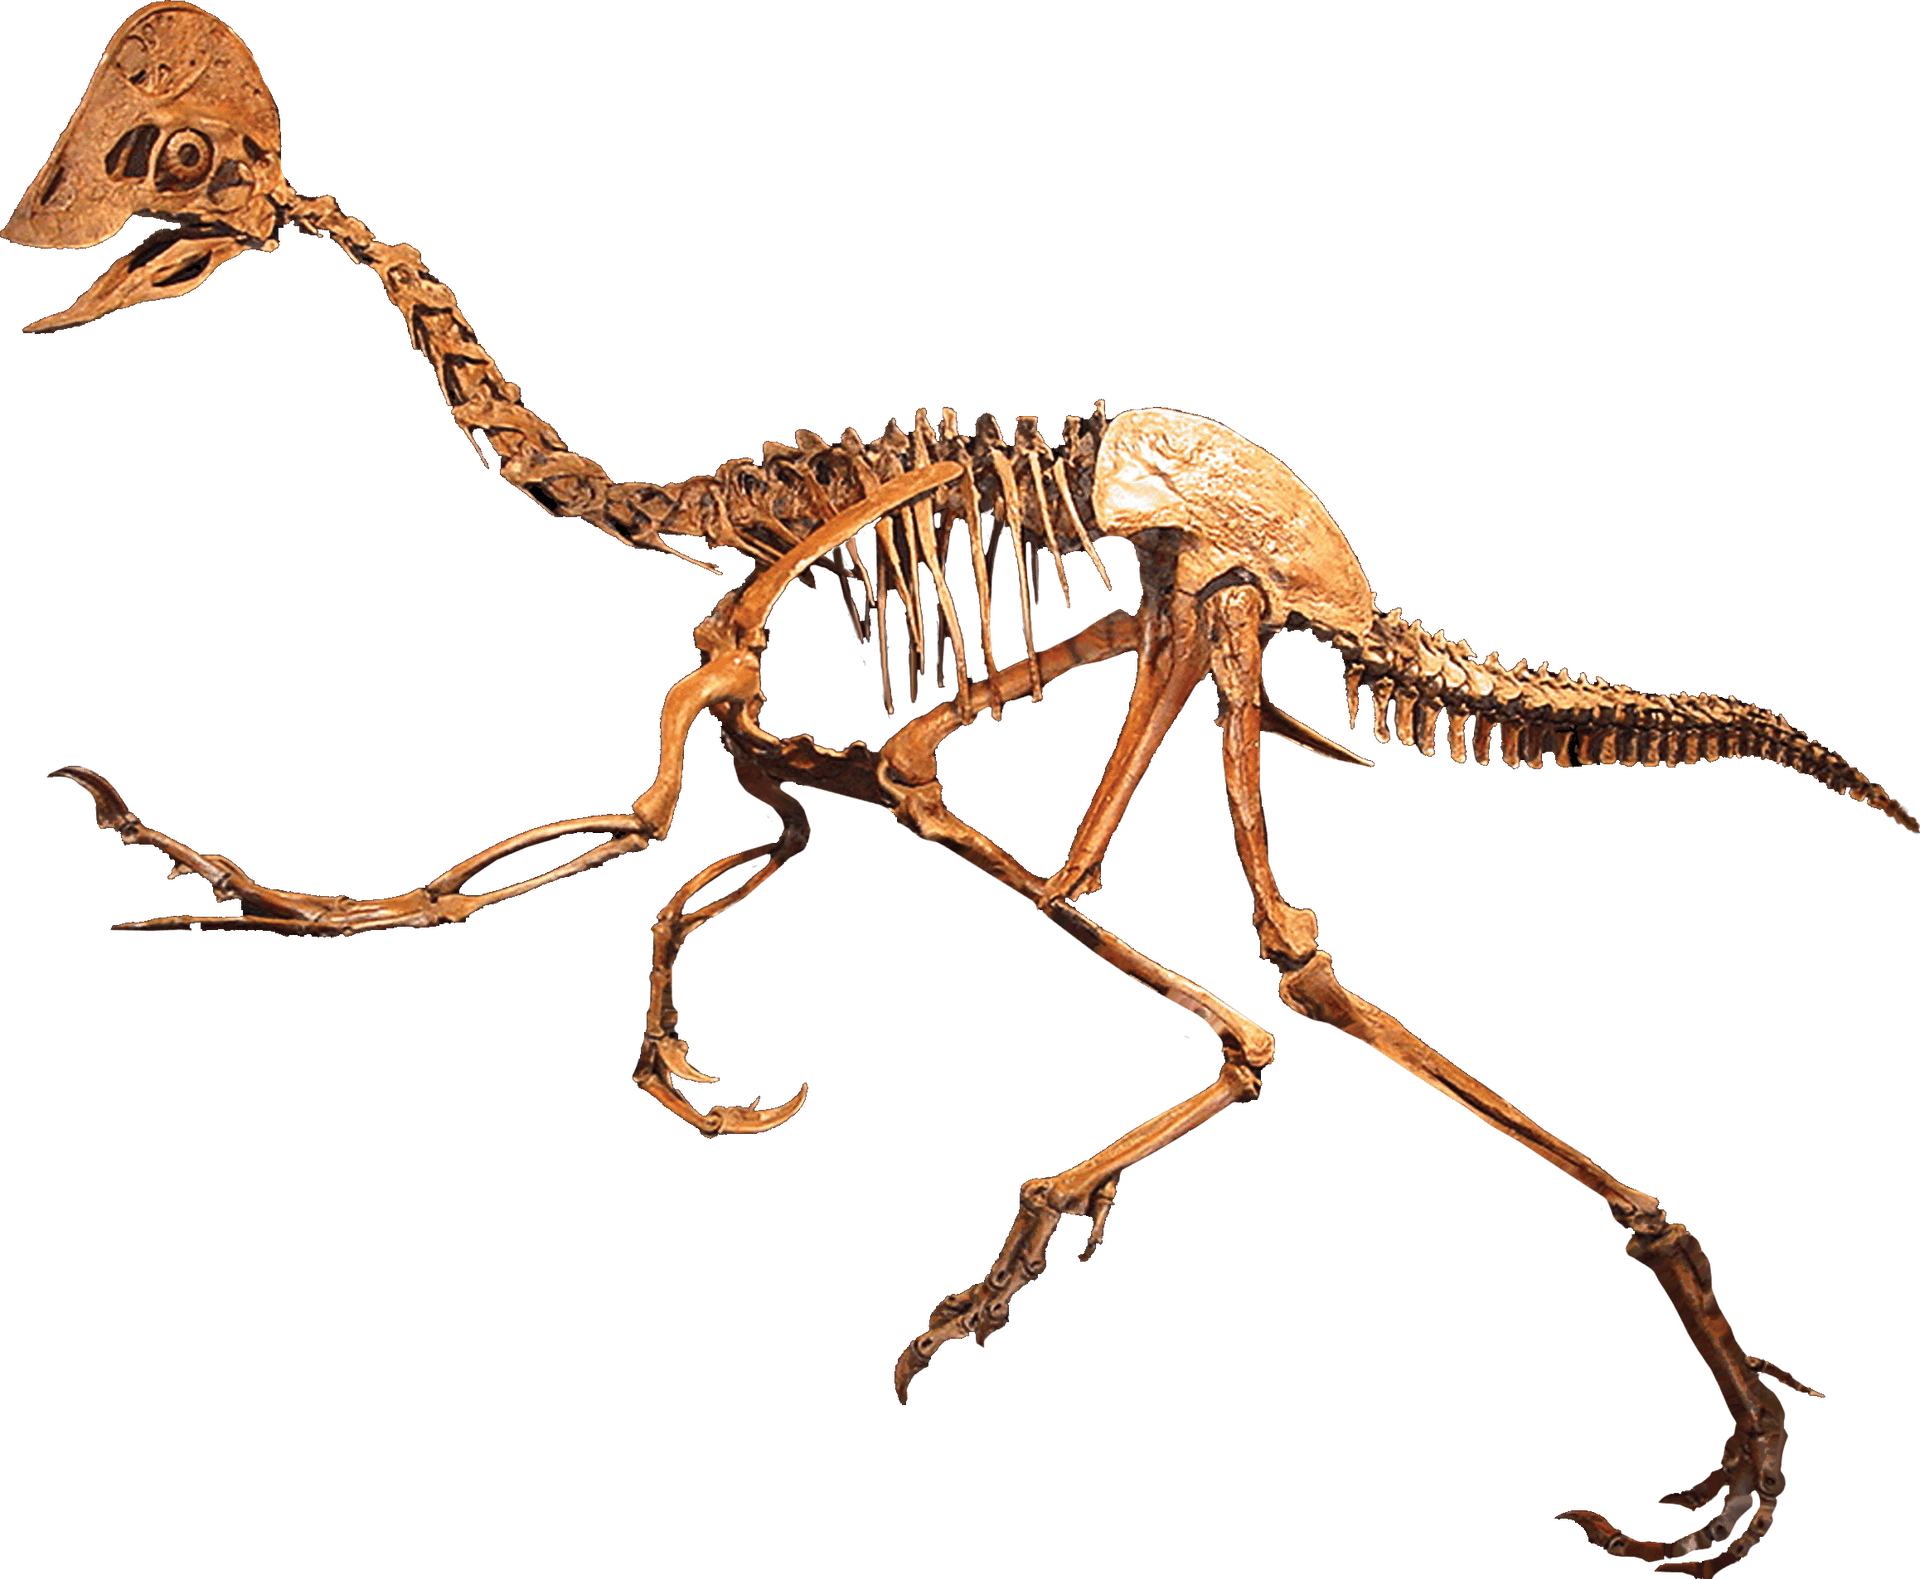 Dinosaur Skeleton Exhibit PNG image